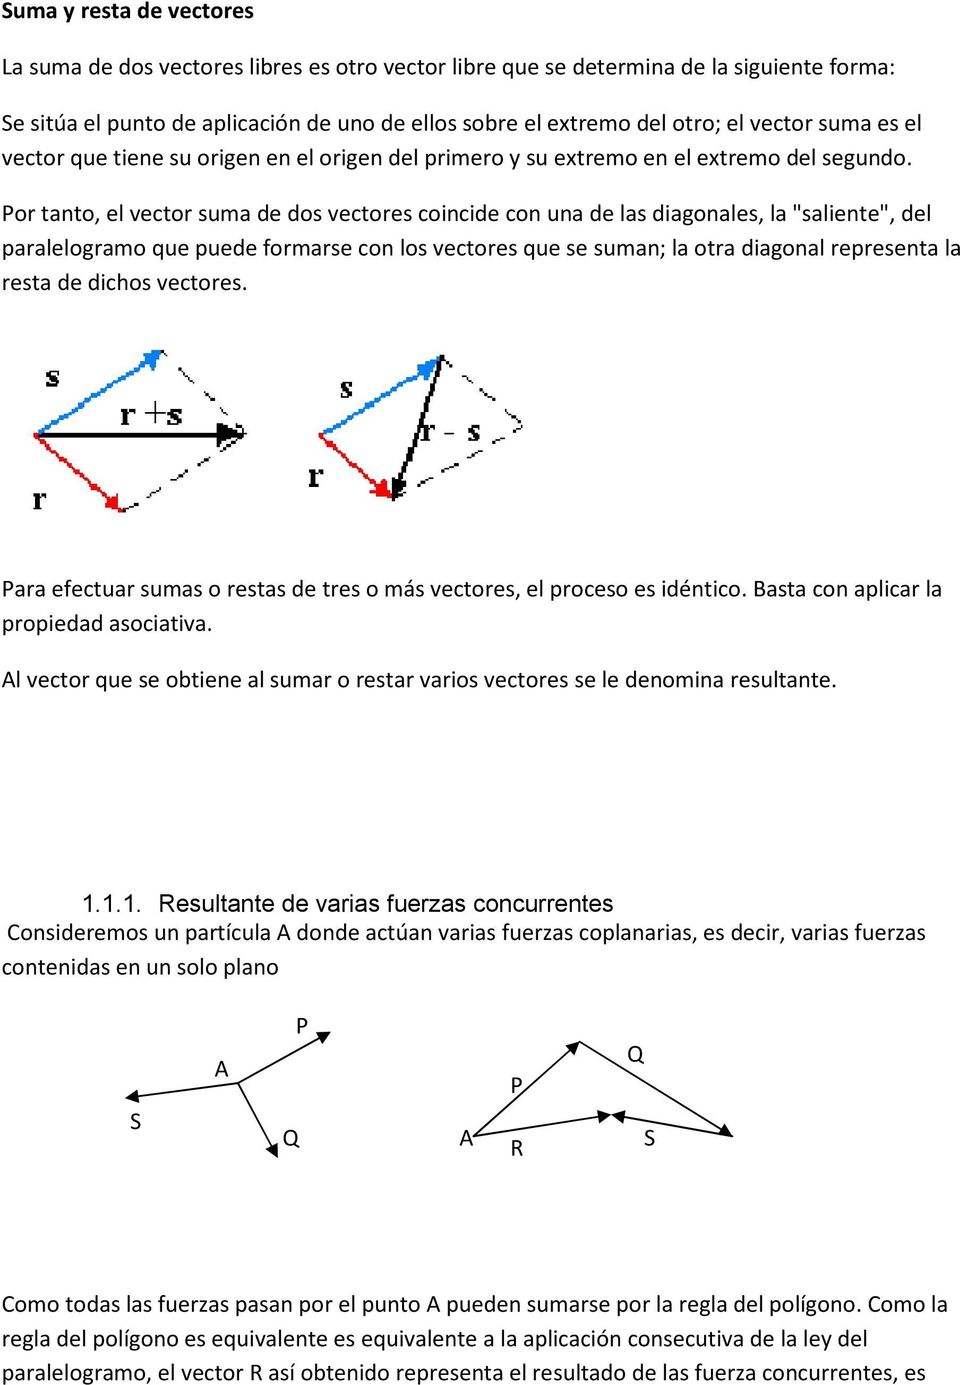 Por tanto, el vector suma de dos vectores coincide con una de las diagonales, la "saliente", del paralelogramo que puede formarse con los vectores que se suman; la otra diagonal representa la resta